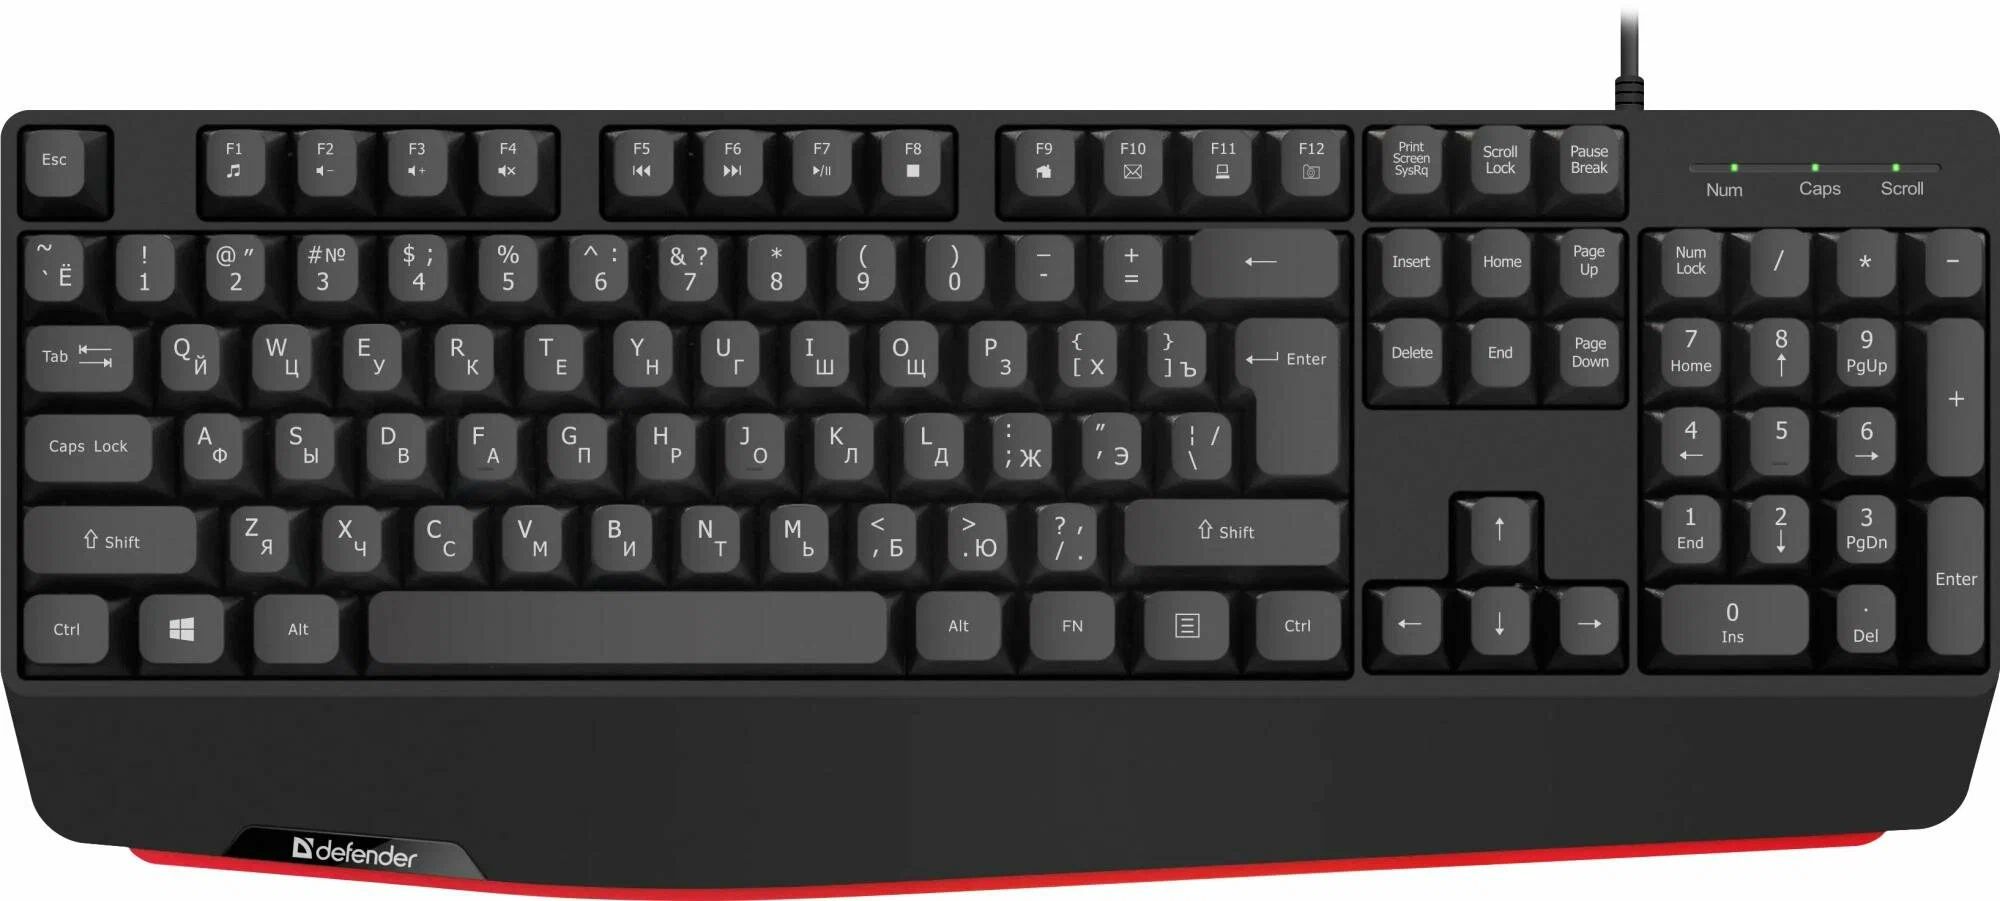 Клавиатура Defender Atom HB-546 RU, черный (45546) клавиатура defender focus hb 470 ru черный